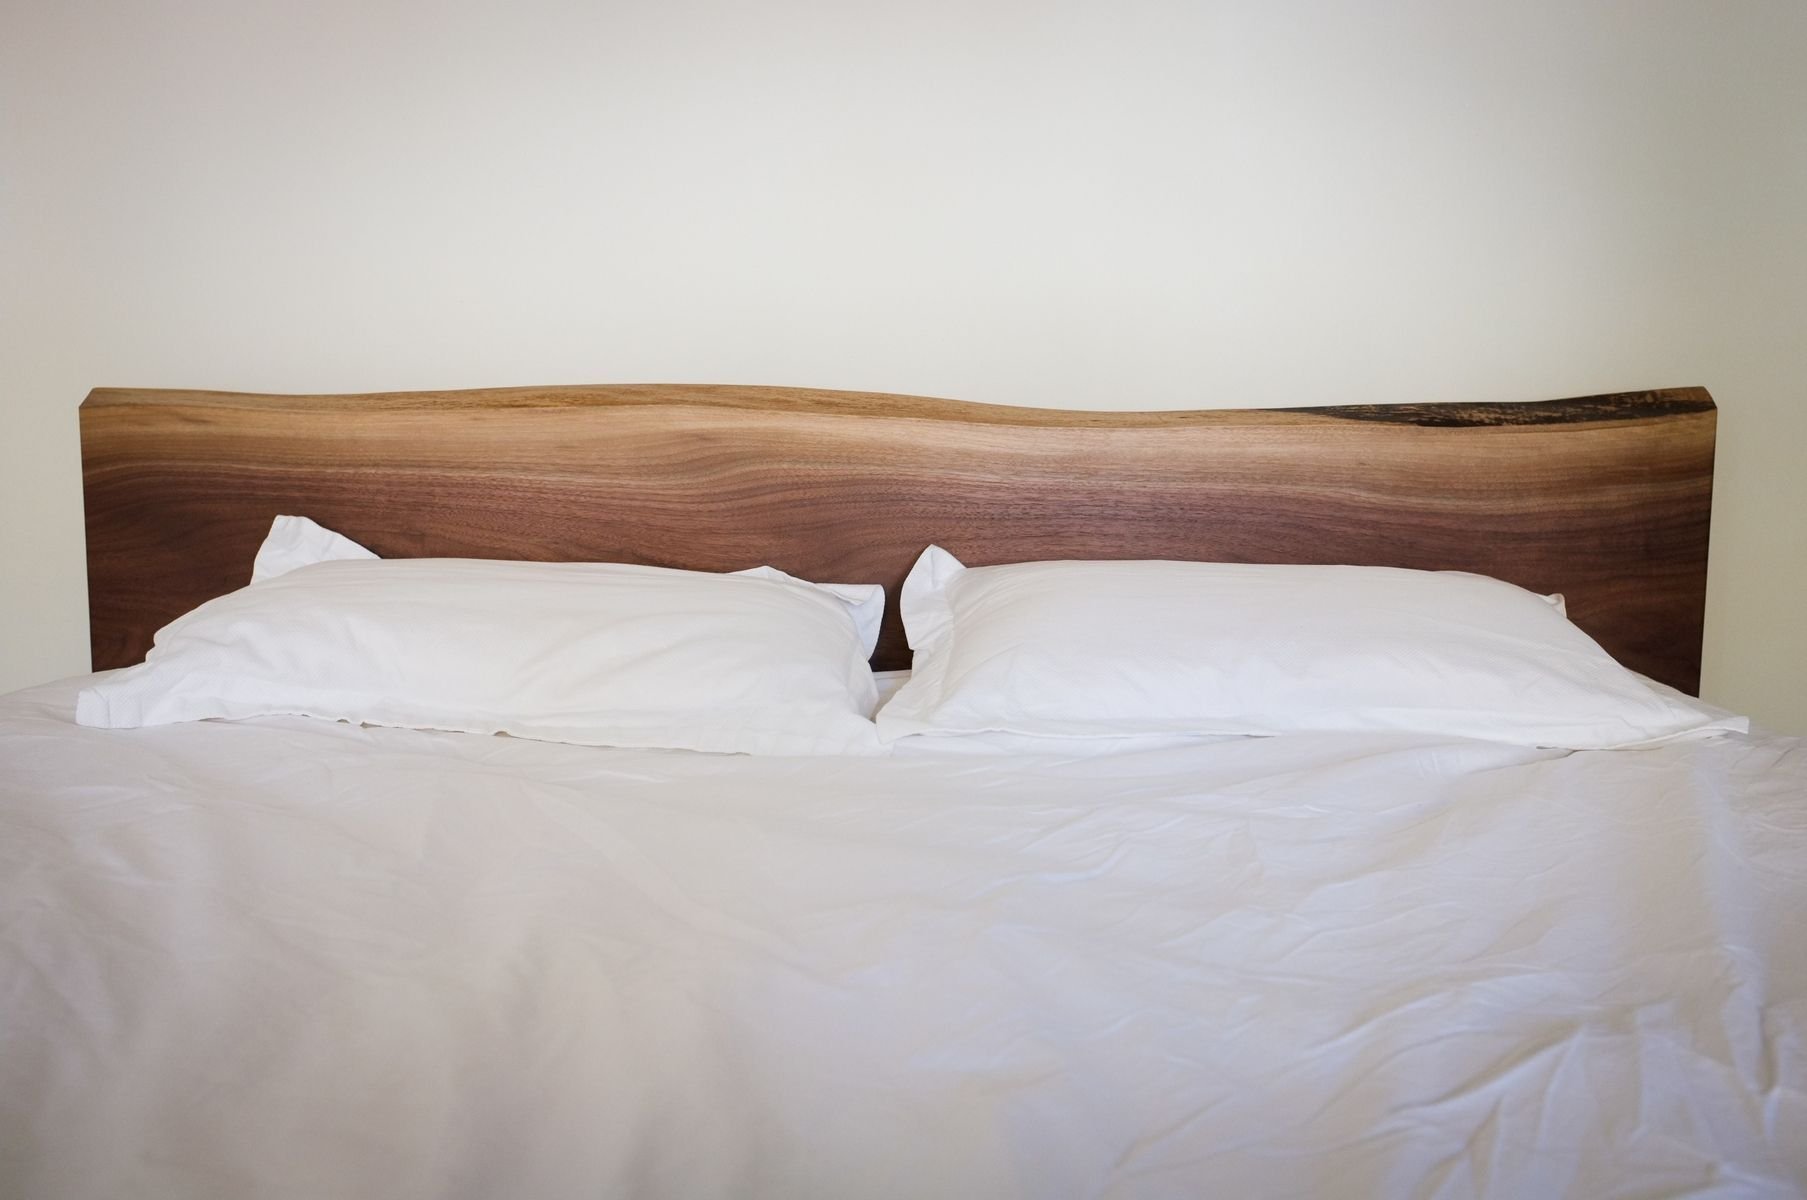 Скинь кровать. Кровать из слэба. Кровать с деревянным изголовьем. Спинка кровати из дерева. Кровать с деревянной спинкой.